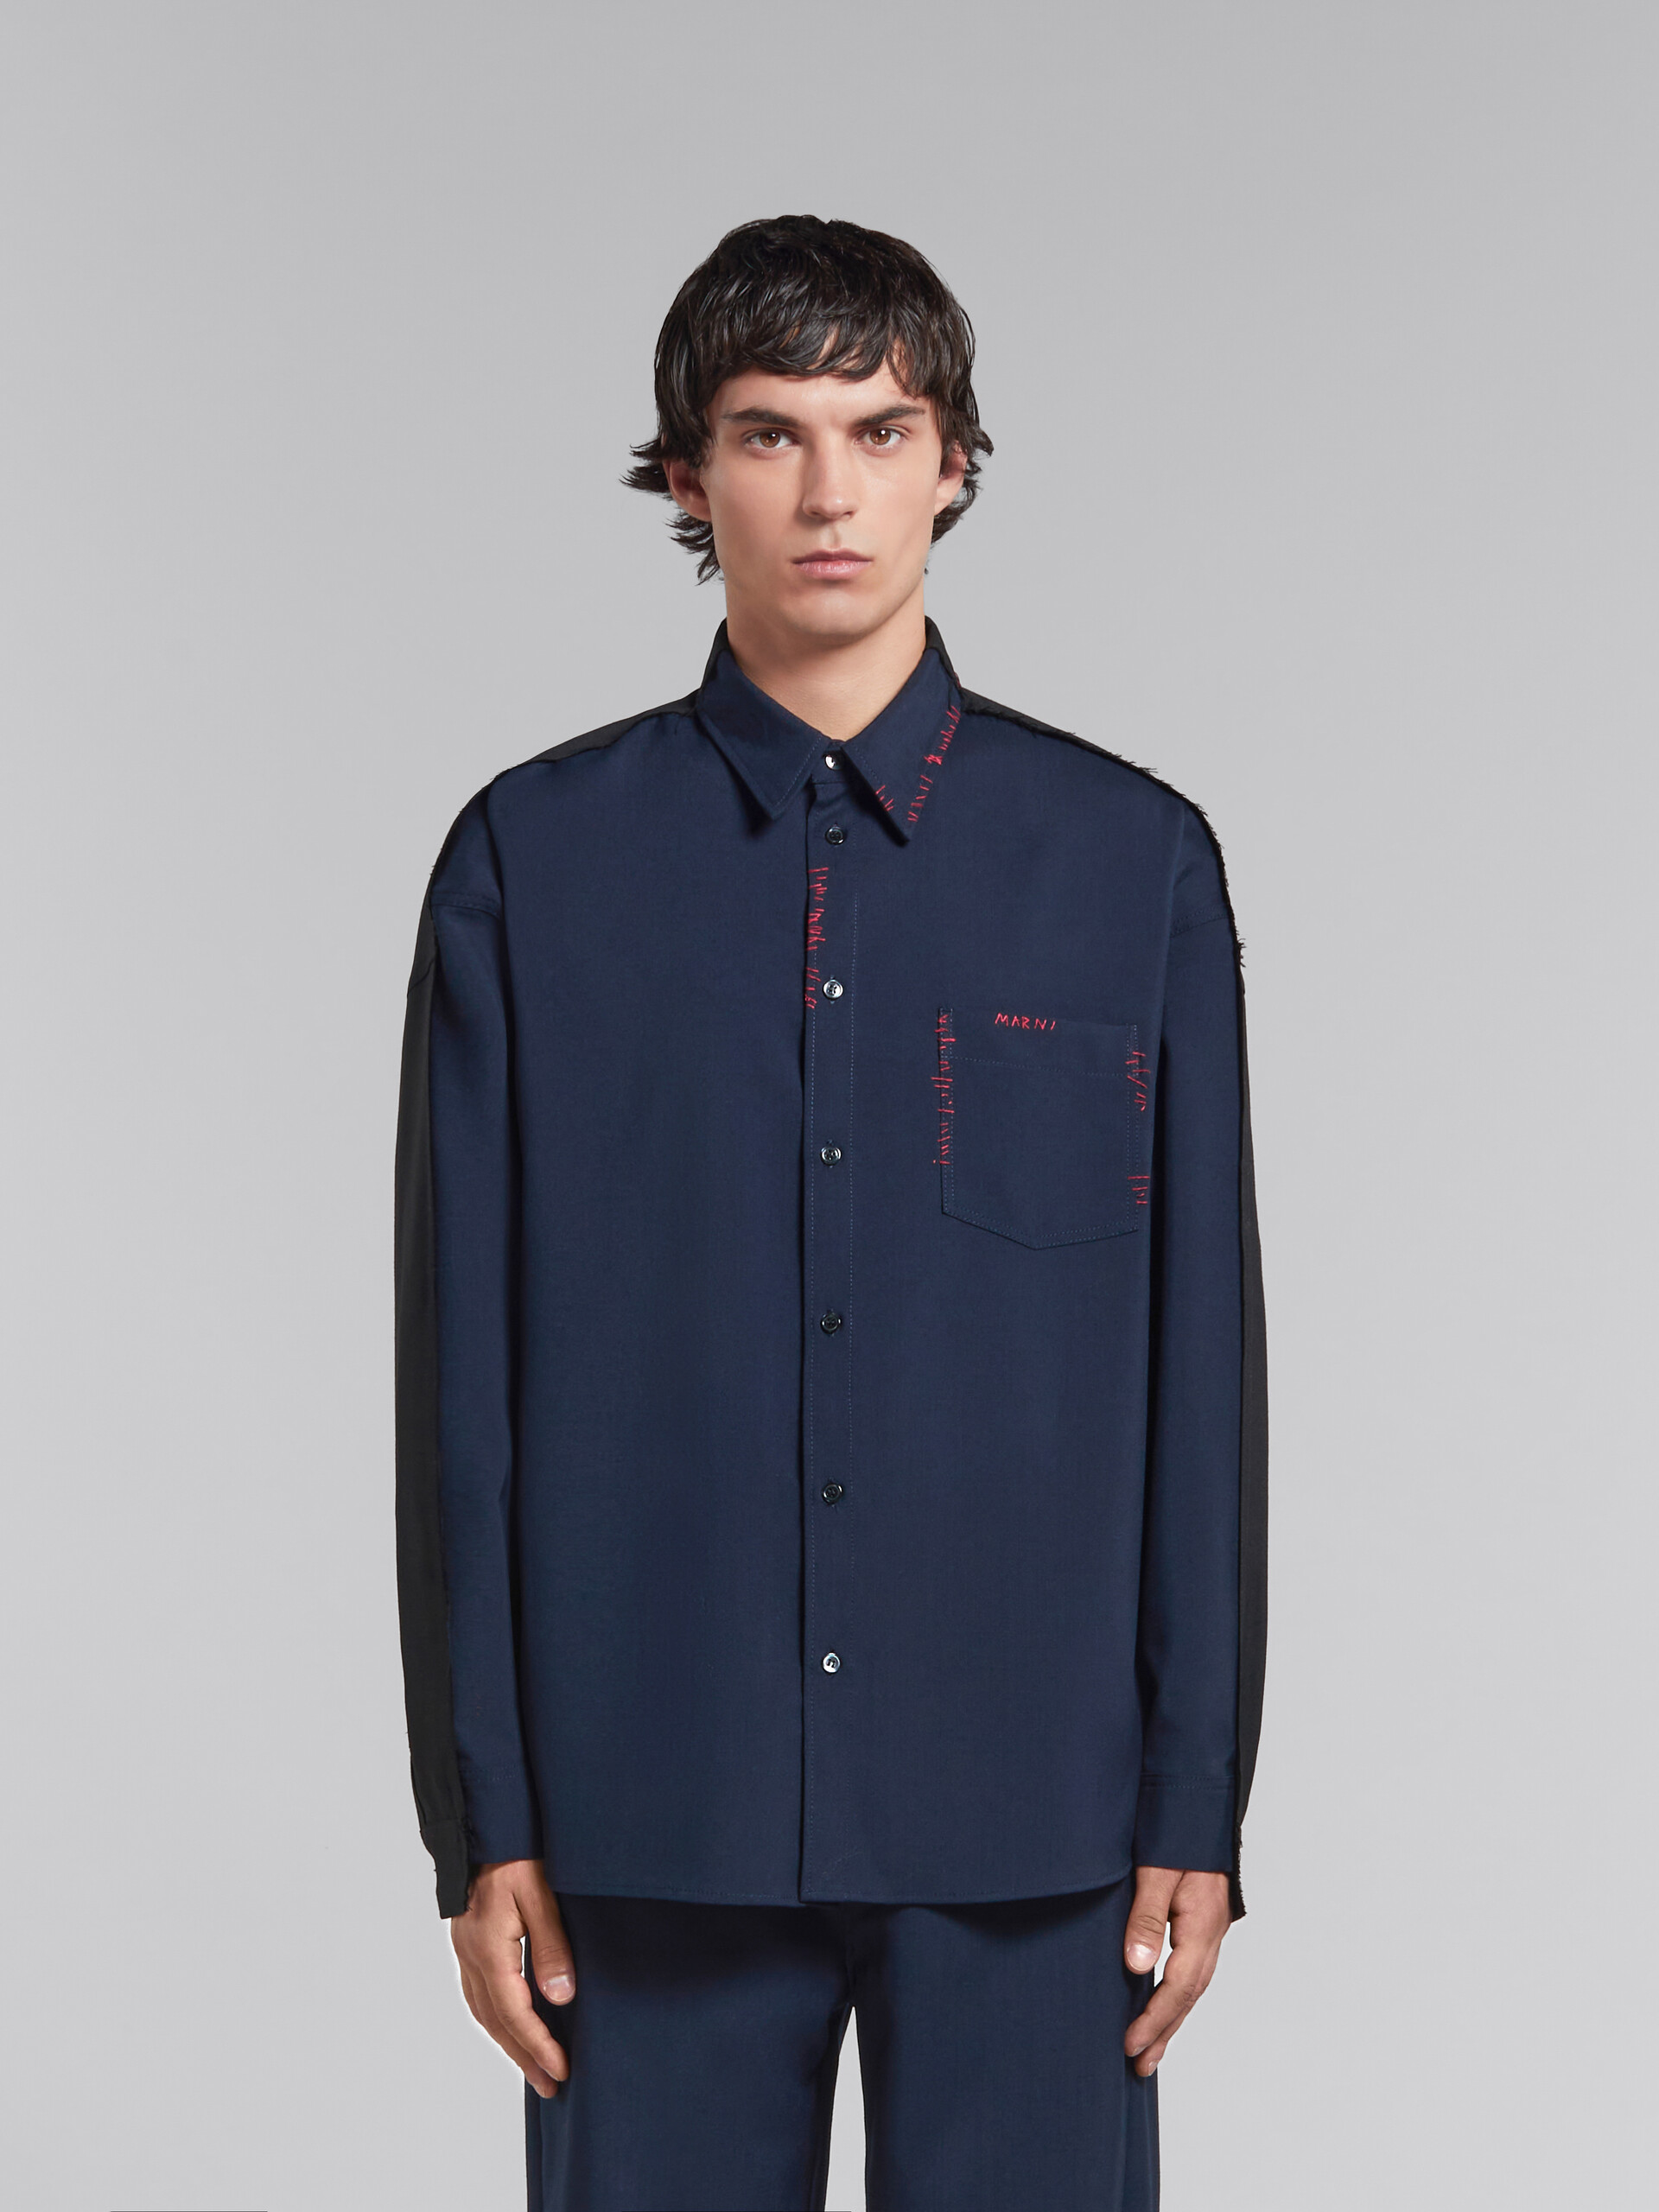 Camisa de lana tropical azul con espalda en contraste - Camisas - Image 2